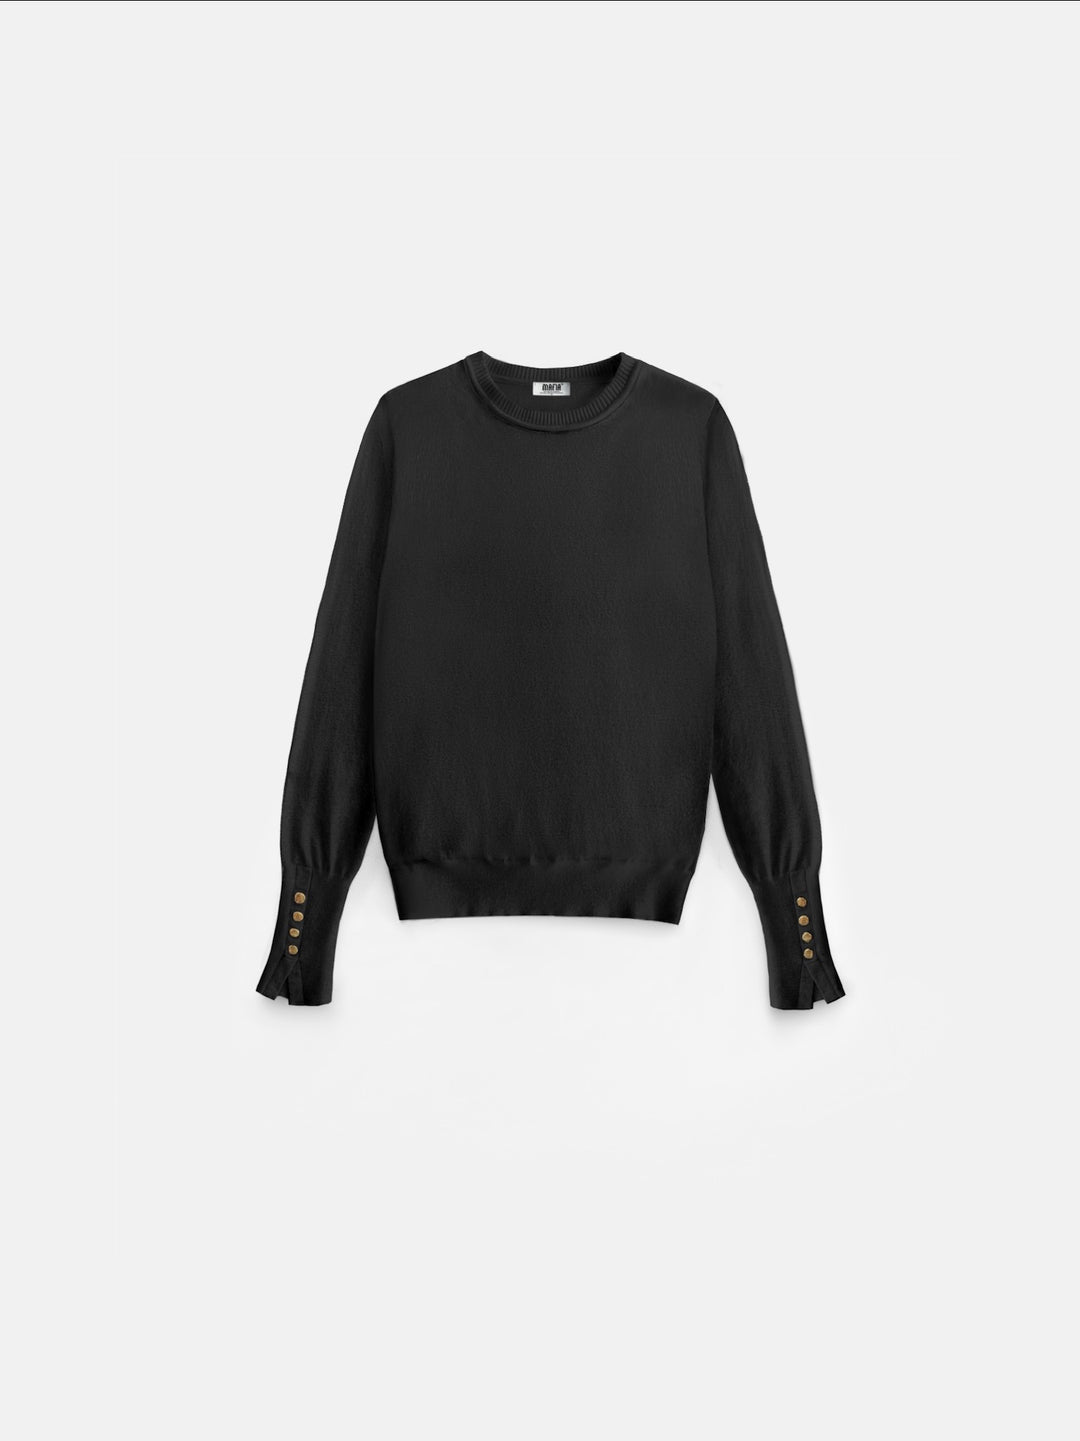 Round Neck Button Sweater - Black